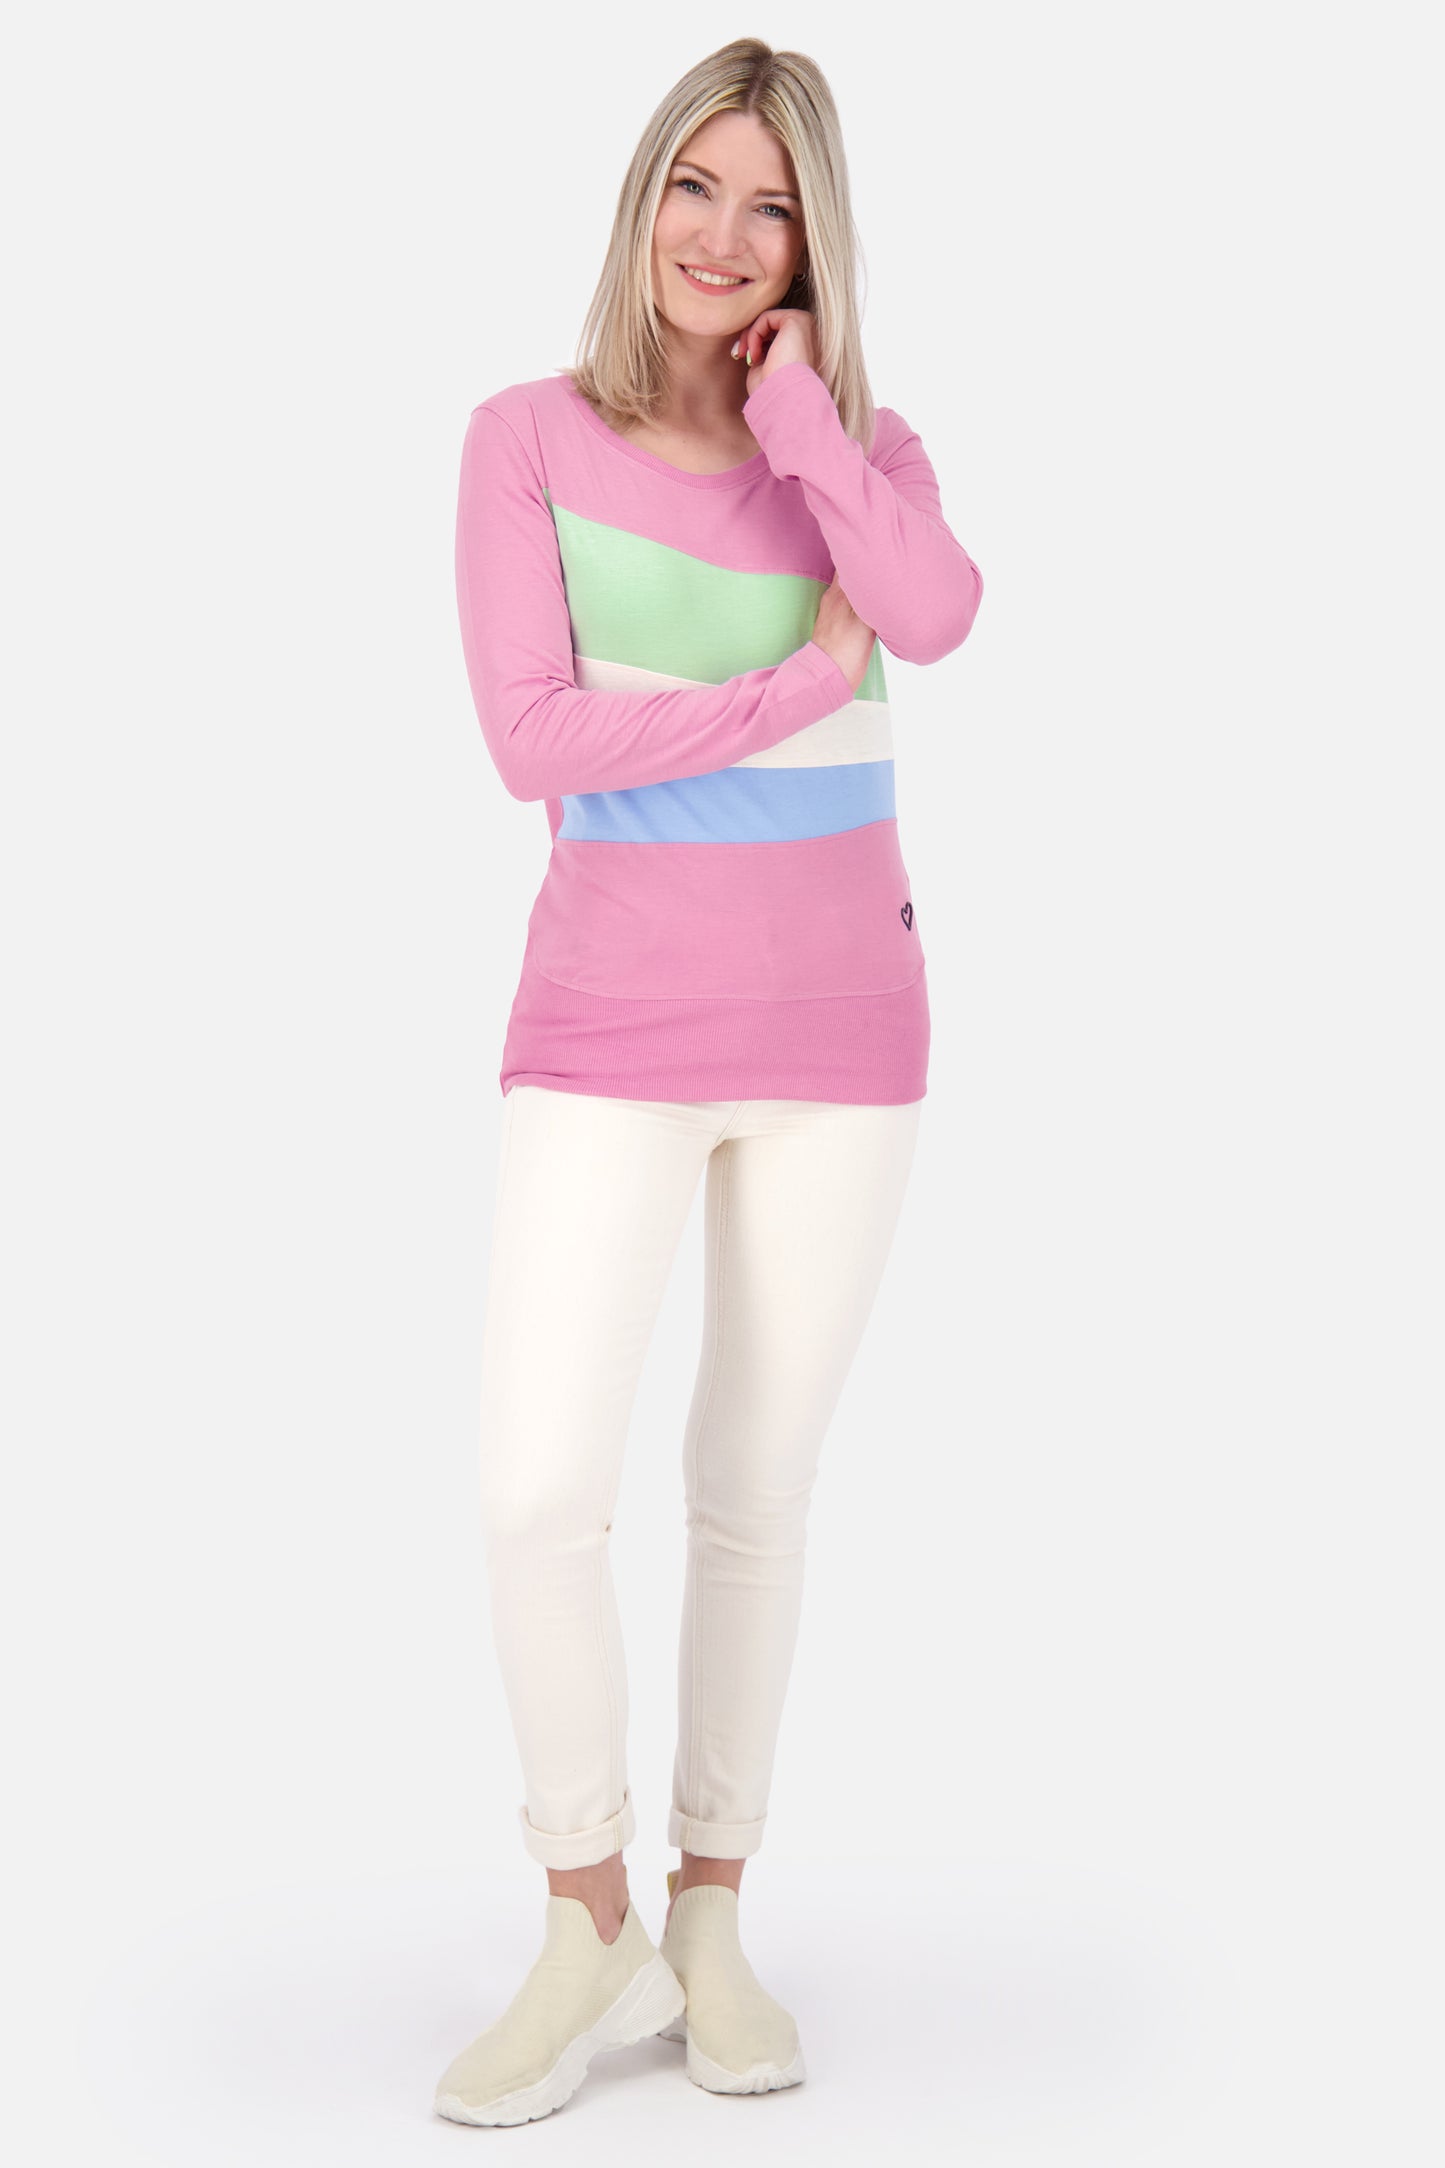 CliaAK A Langarmshirt Damen: Colourblocking-Streifen für einen einzigartigen Look Pink